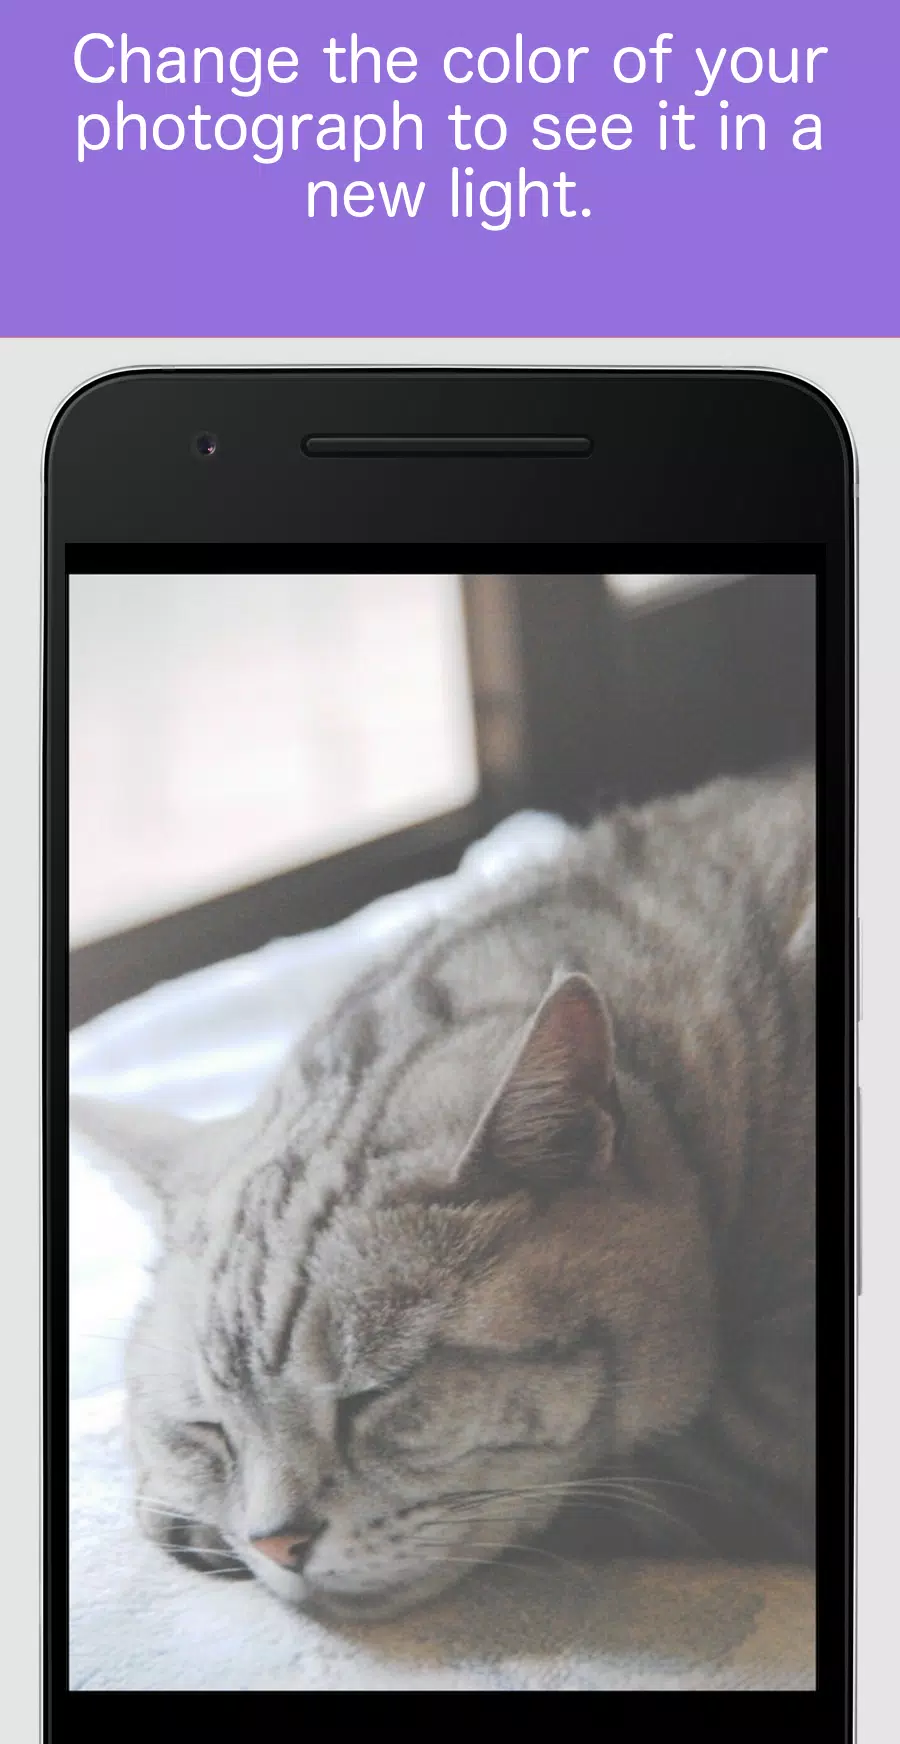 Android 用の 壁紙サイズに変換 壁紙サイズ変更アプリ 写真リサイズ Apk をダウンロード